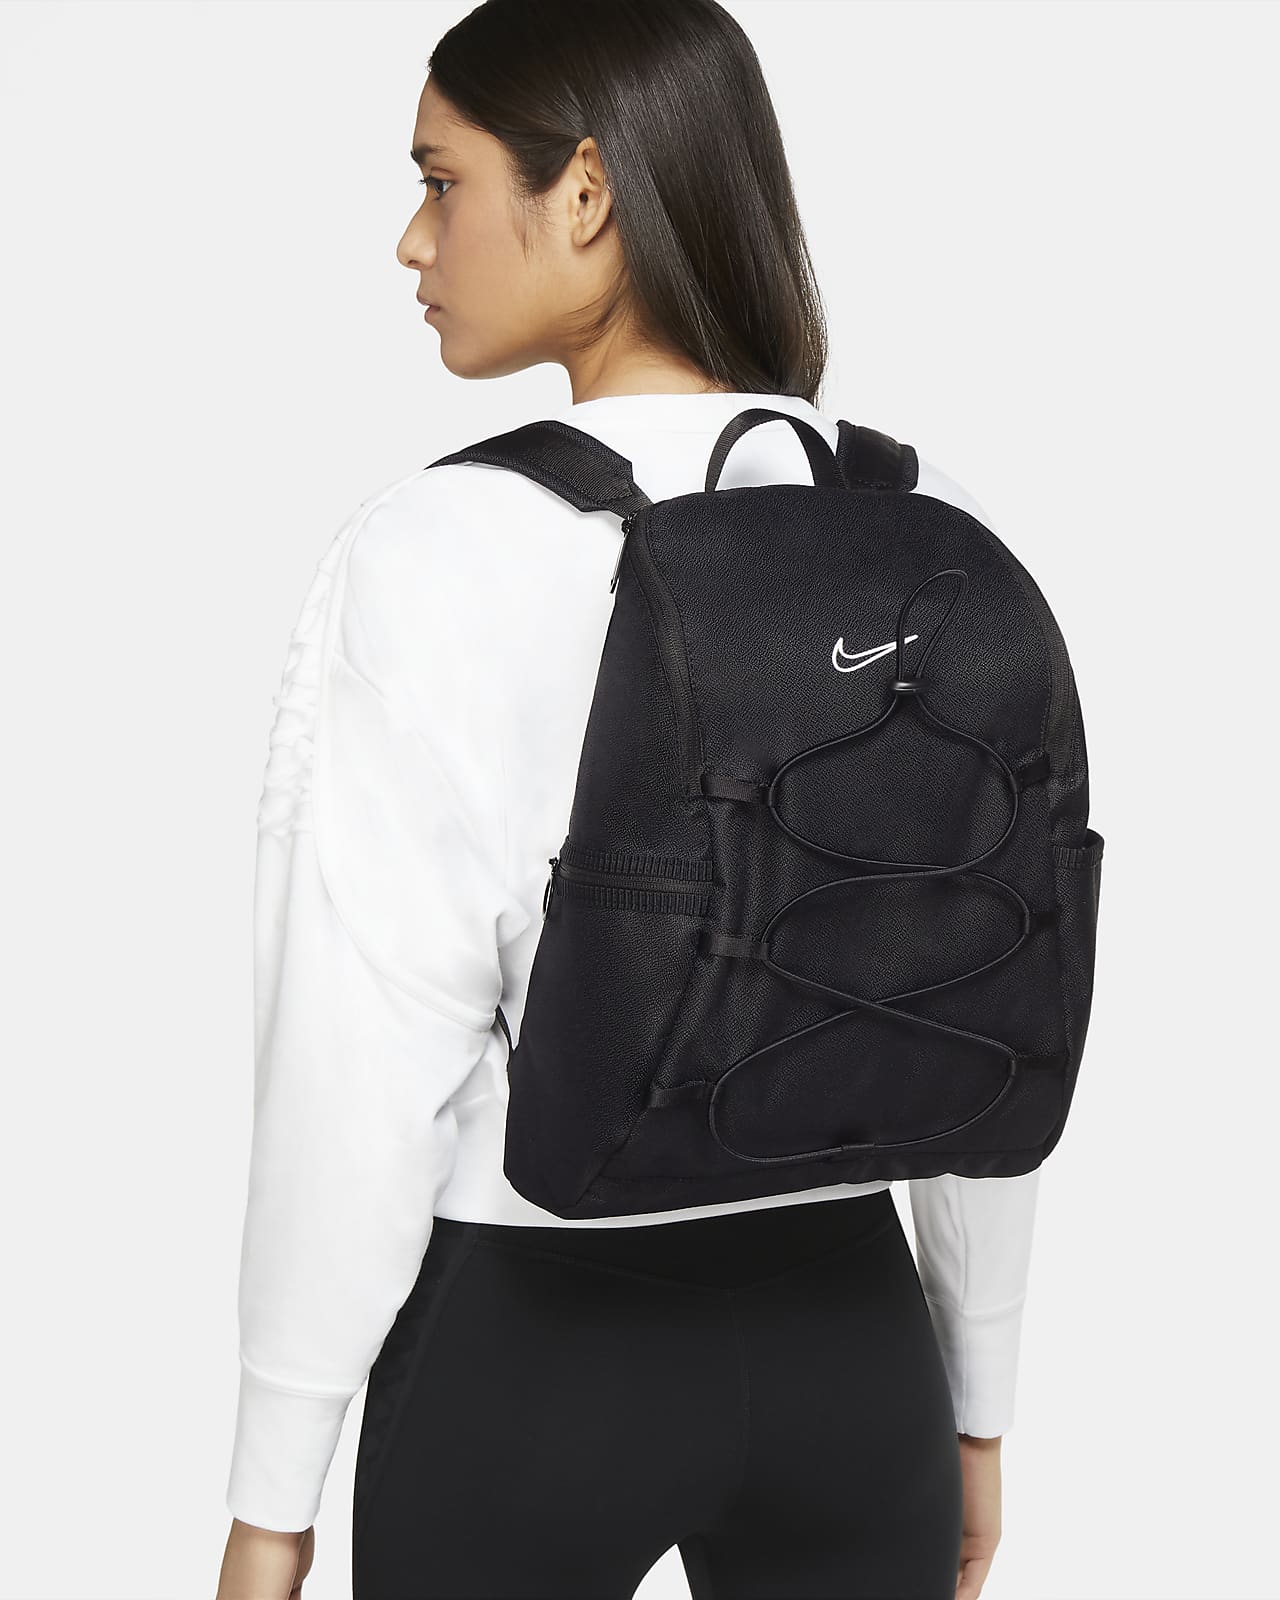 nike women backpack